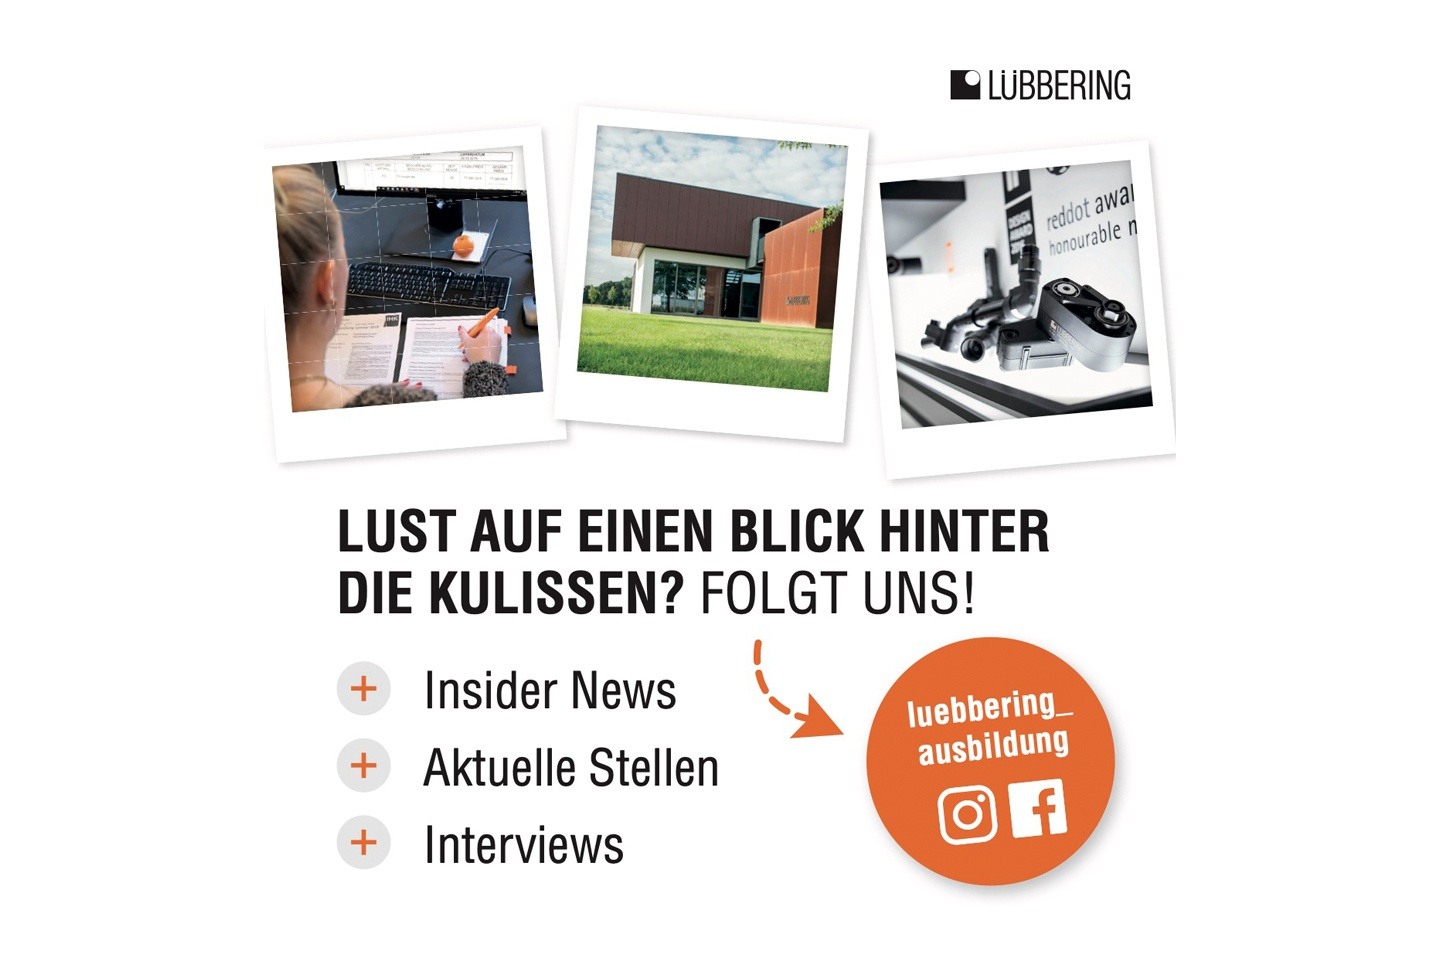 Lübbering GmbH auf Instagram